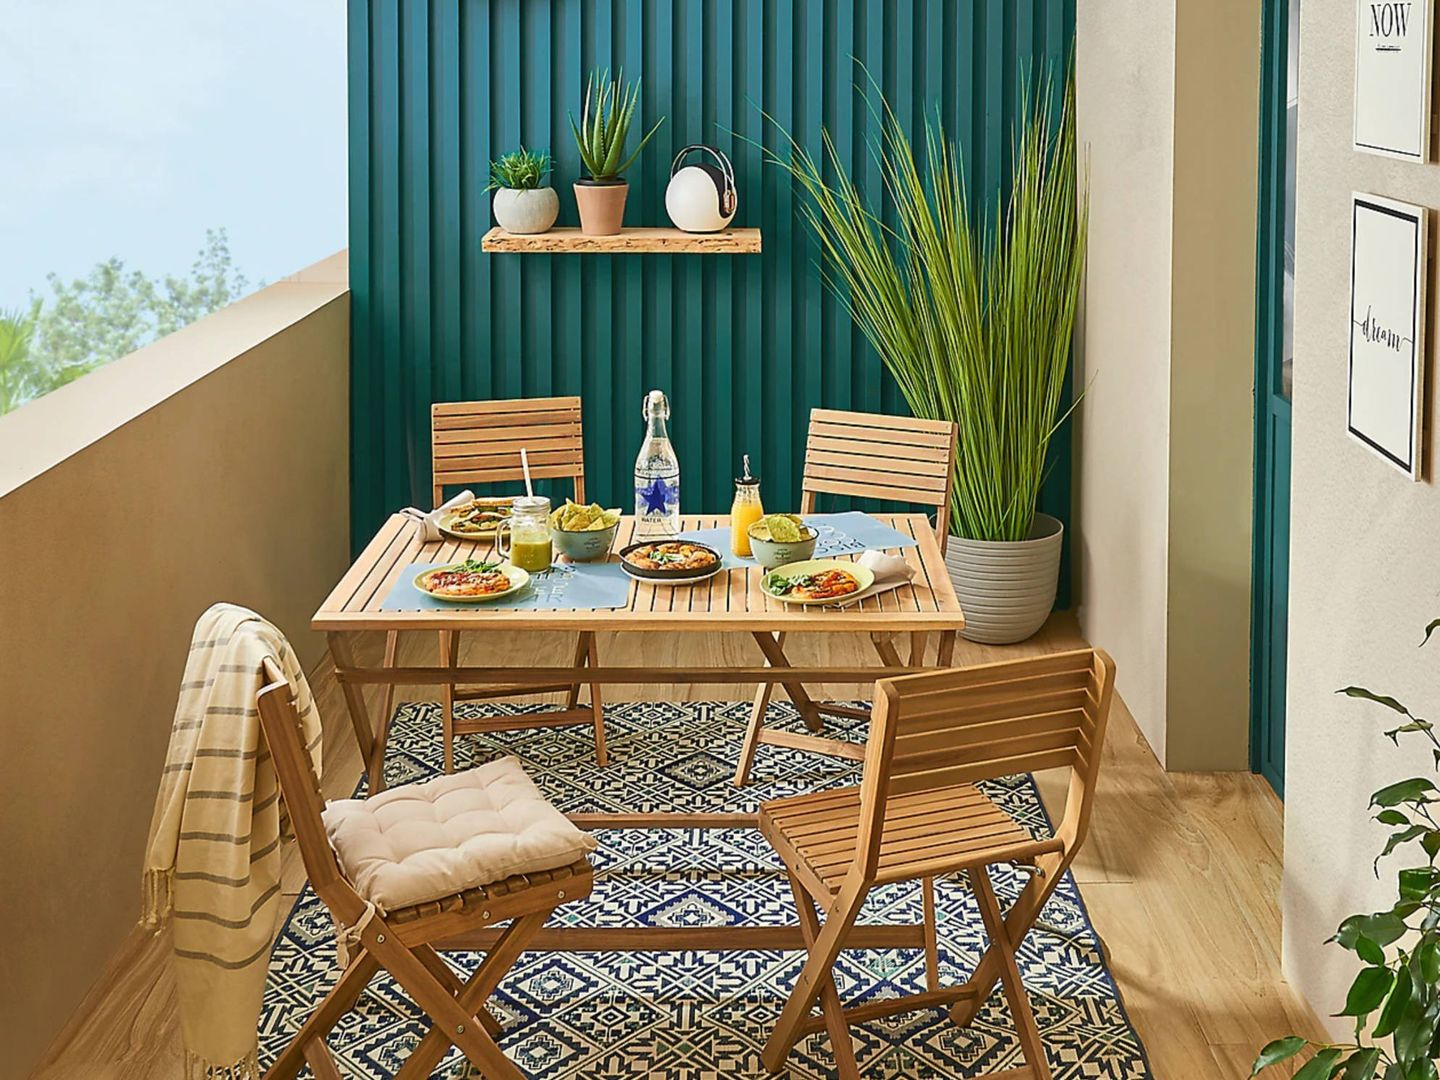 Las mesas de terraza de Leroy Merlin perfectas para el verano